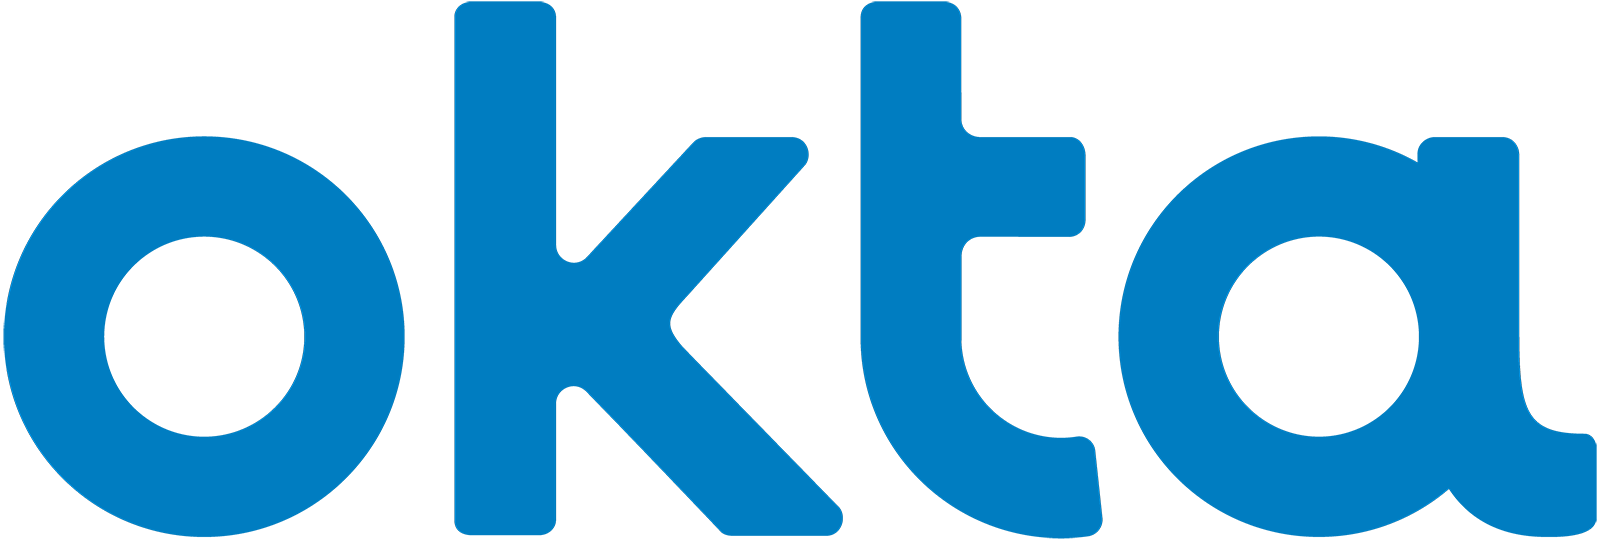 Okta logo for partner section